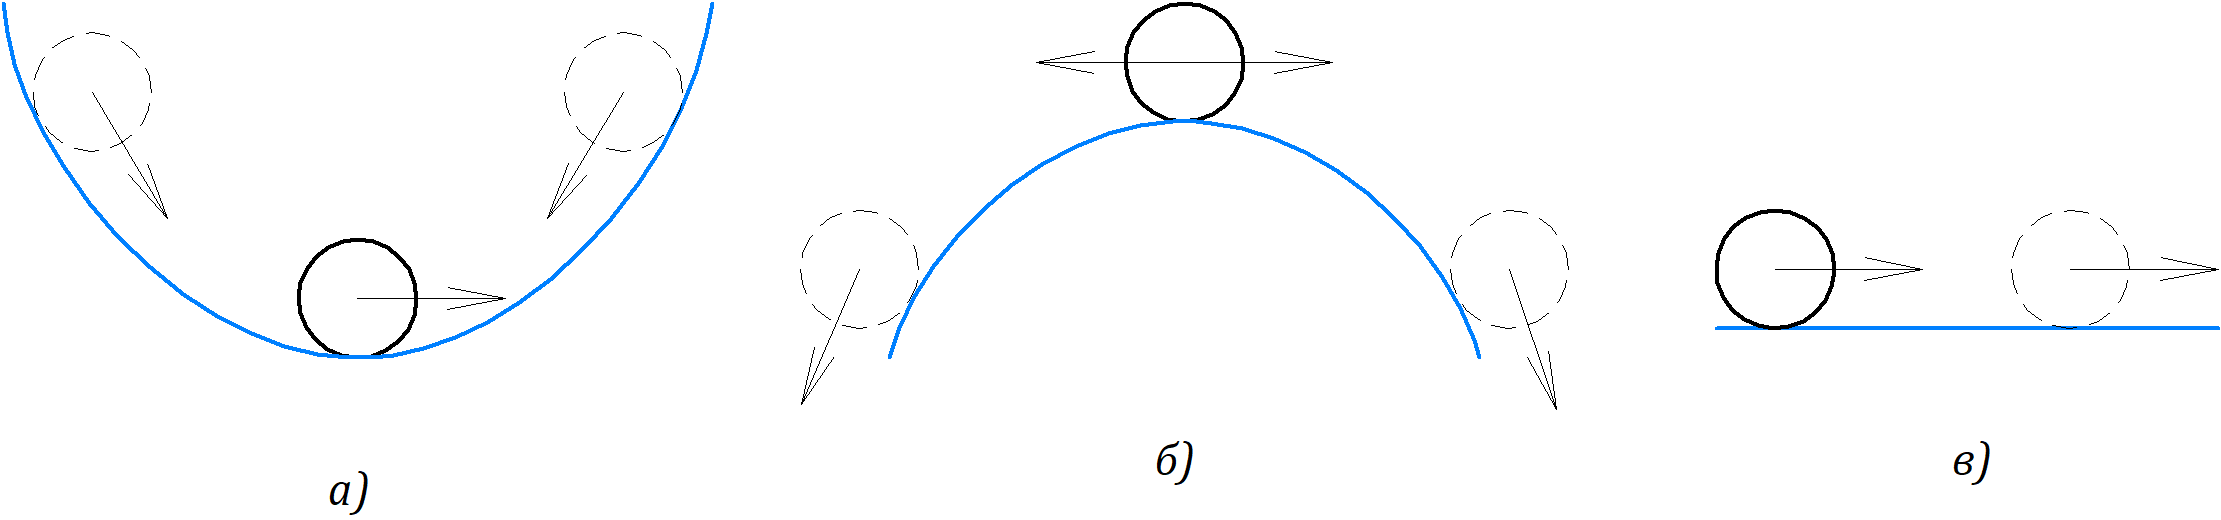 Рисунок 6.1.1 а) абсолютно устойчивое положение, б) неустойчивое положение, в) нейтральное (безразличное) положение.